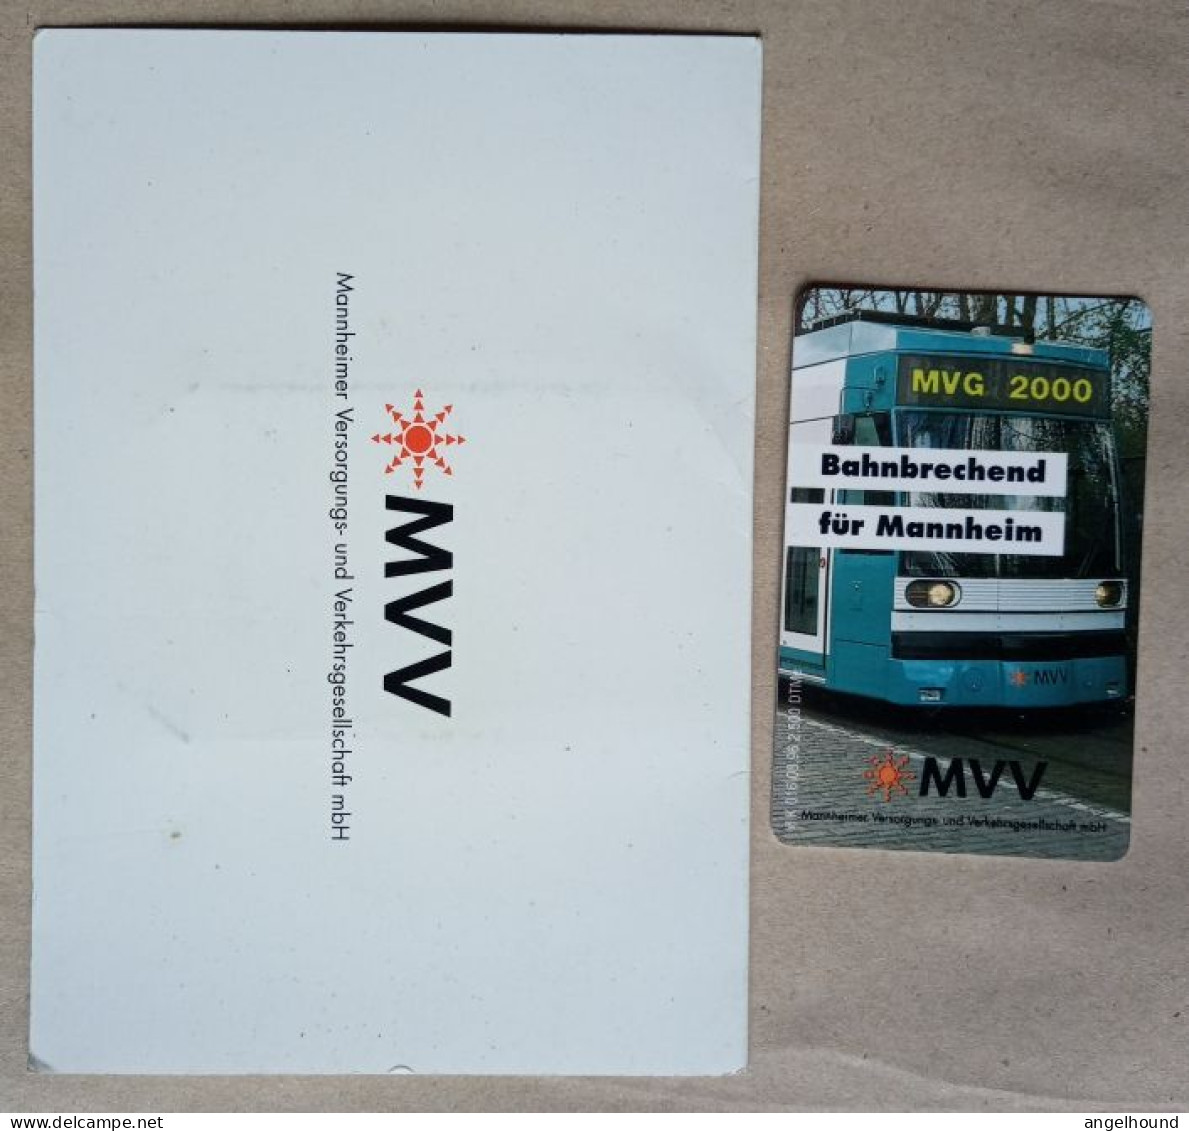 Germany 12 DM  MINT  K 016 08.96 2500 Mintage - MVV - K-Series: Kundenserie